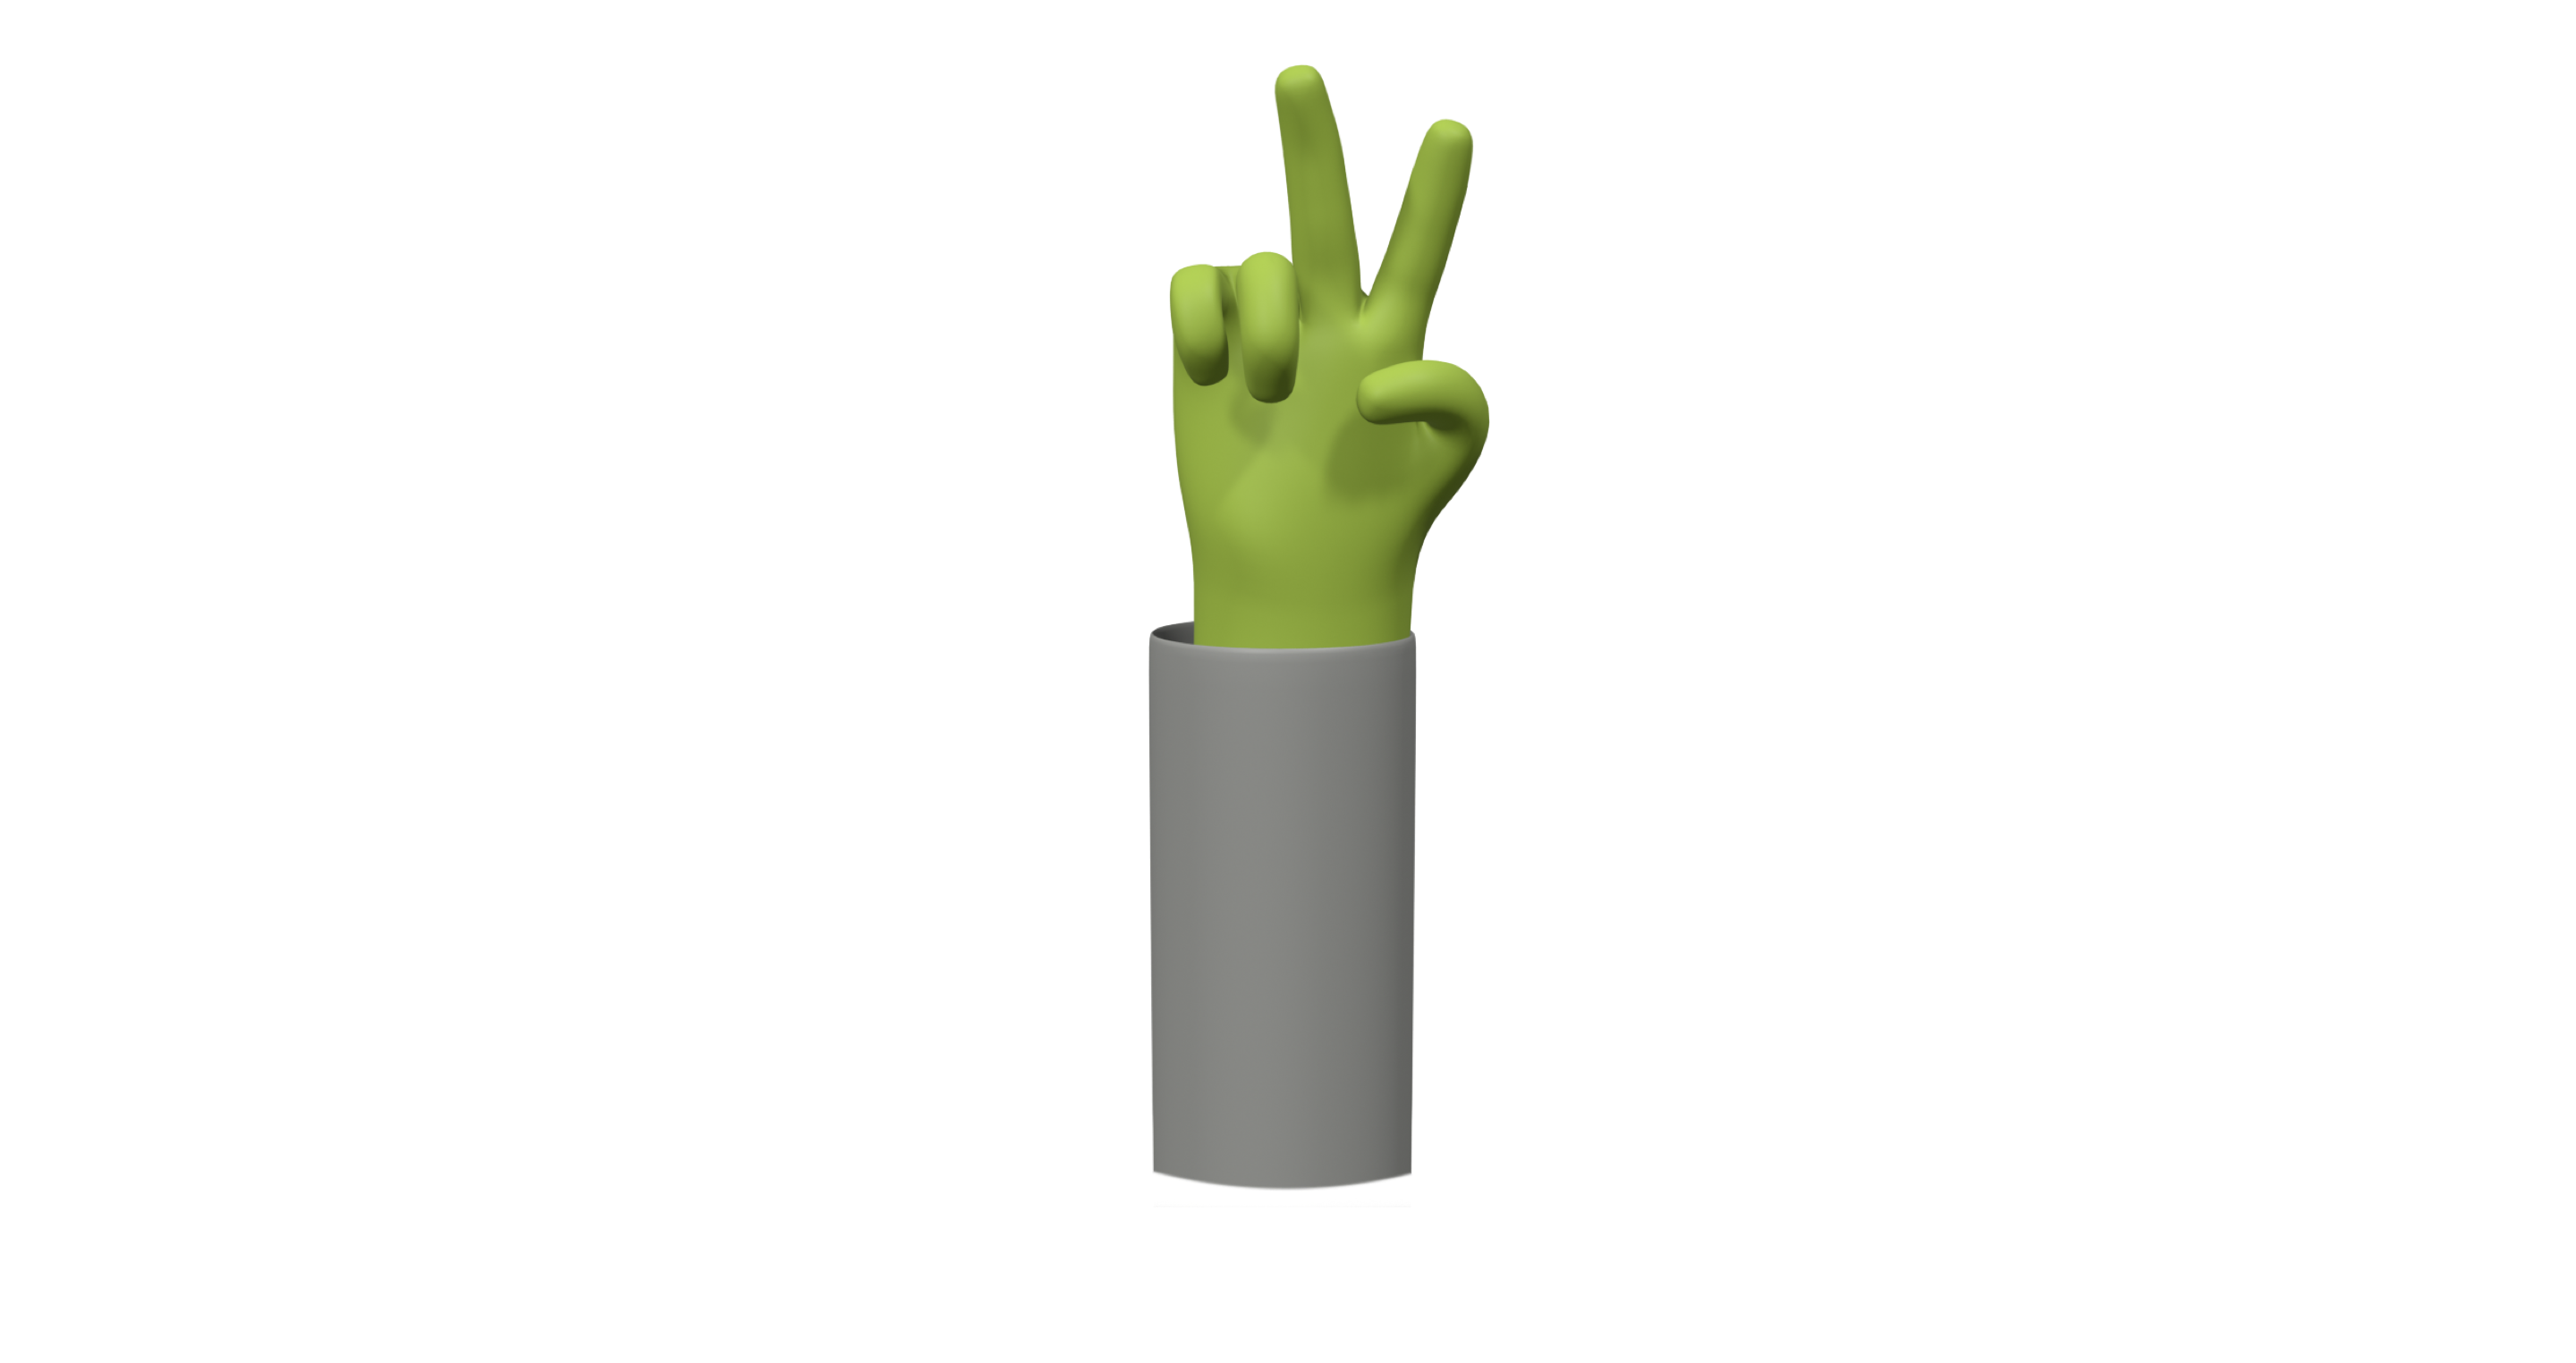 Ein Icon, das eine Hand zeigt, die gerade ein Peace-Zeichen macht.